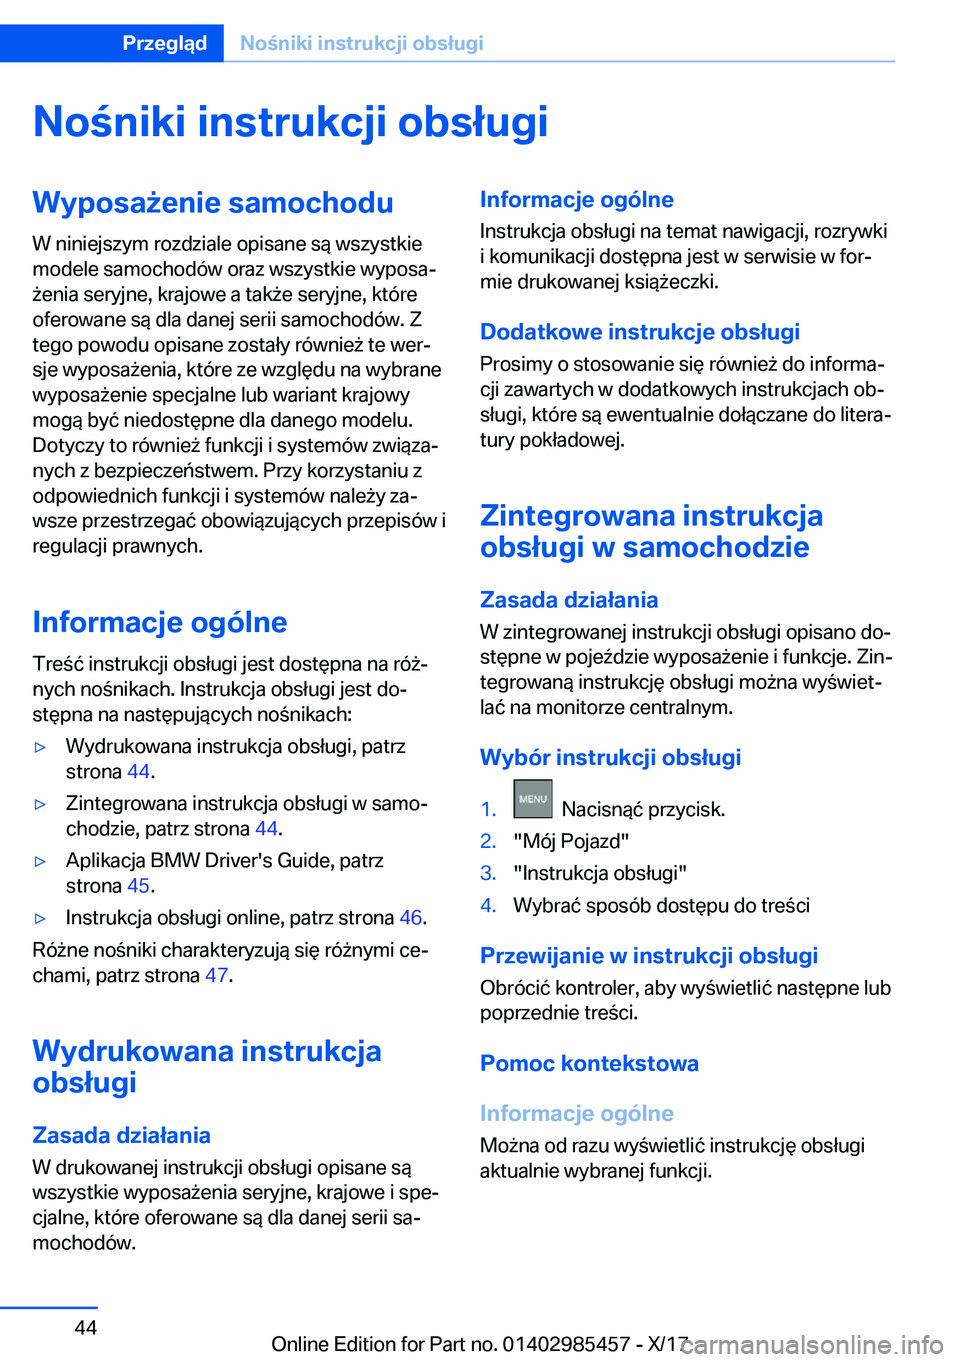 BMW X1 2018  Instrukcja obsługi (in Polish) �N�o�n�i�k�i��i�n�s�t�r�u�k�c�j�i��o�b�s�ł�u�g�i�W�y�p�o�s�a9�e�n�i�e��s�a�m�o�c�h�o�d�u
�W� �n�i�n�i�e�j�s�z�y�m� �r�o�z�d�z�i�a�l�e� �o�p�i�s�a�n�e� �s�